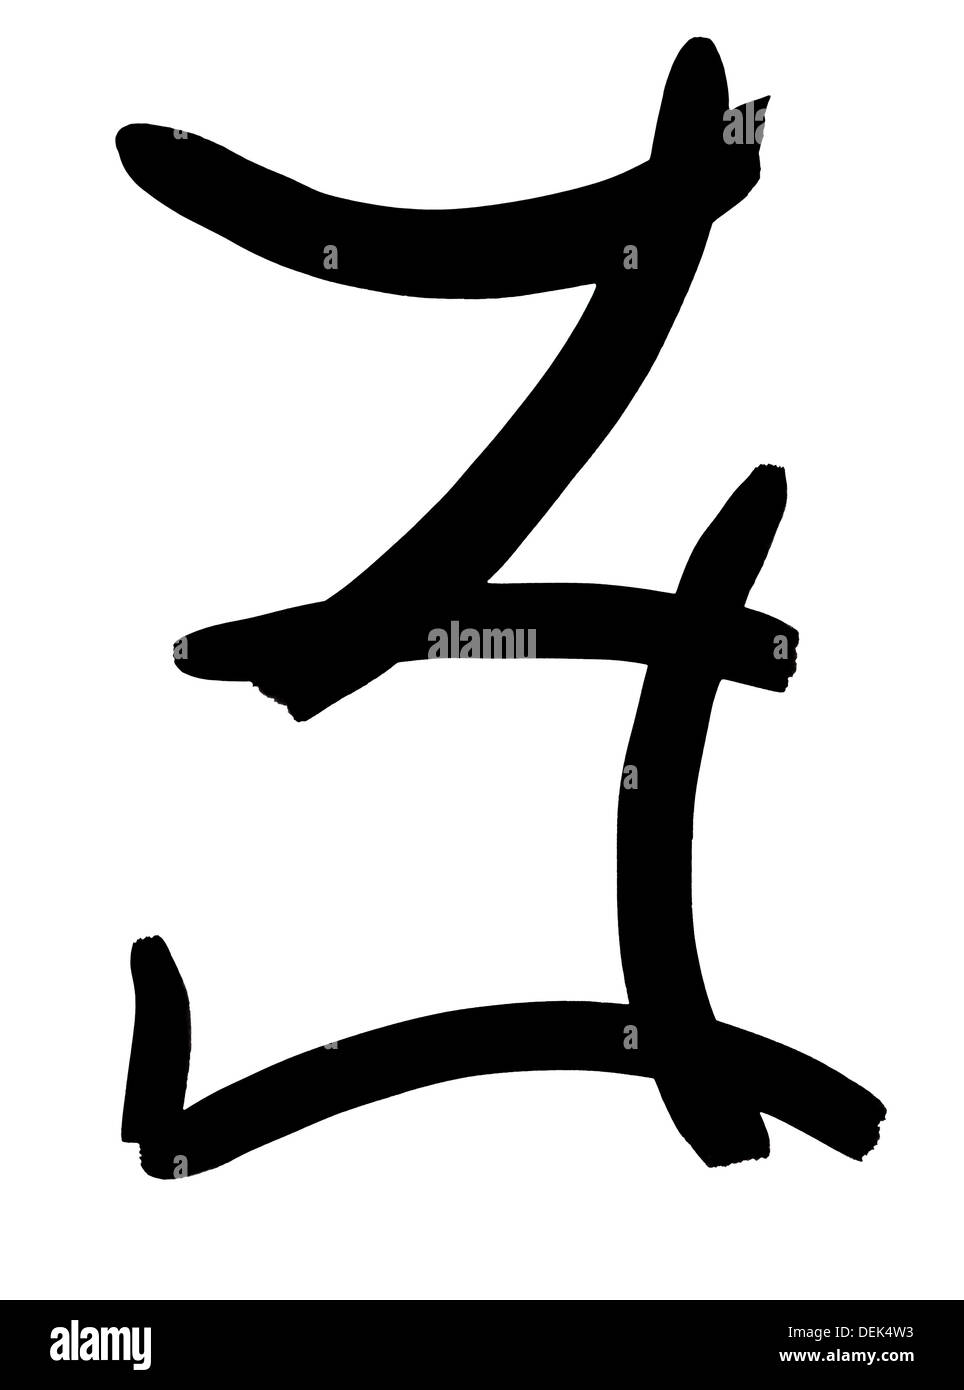 Arabische Ziffer 3 Hand geschrieben in schwarzer Tinte auf weißem Hintergrund Stockfoto